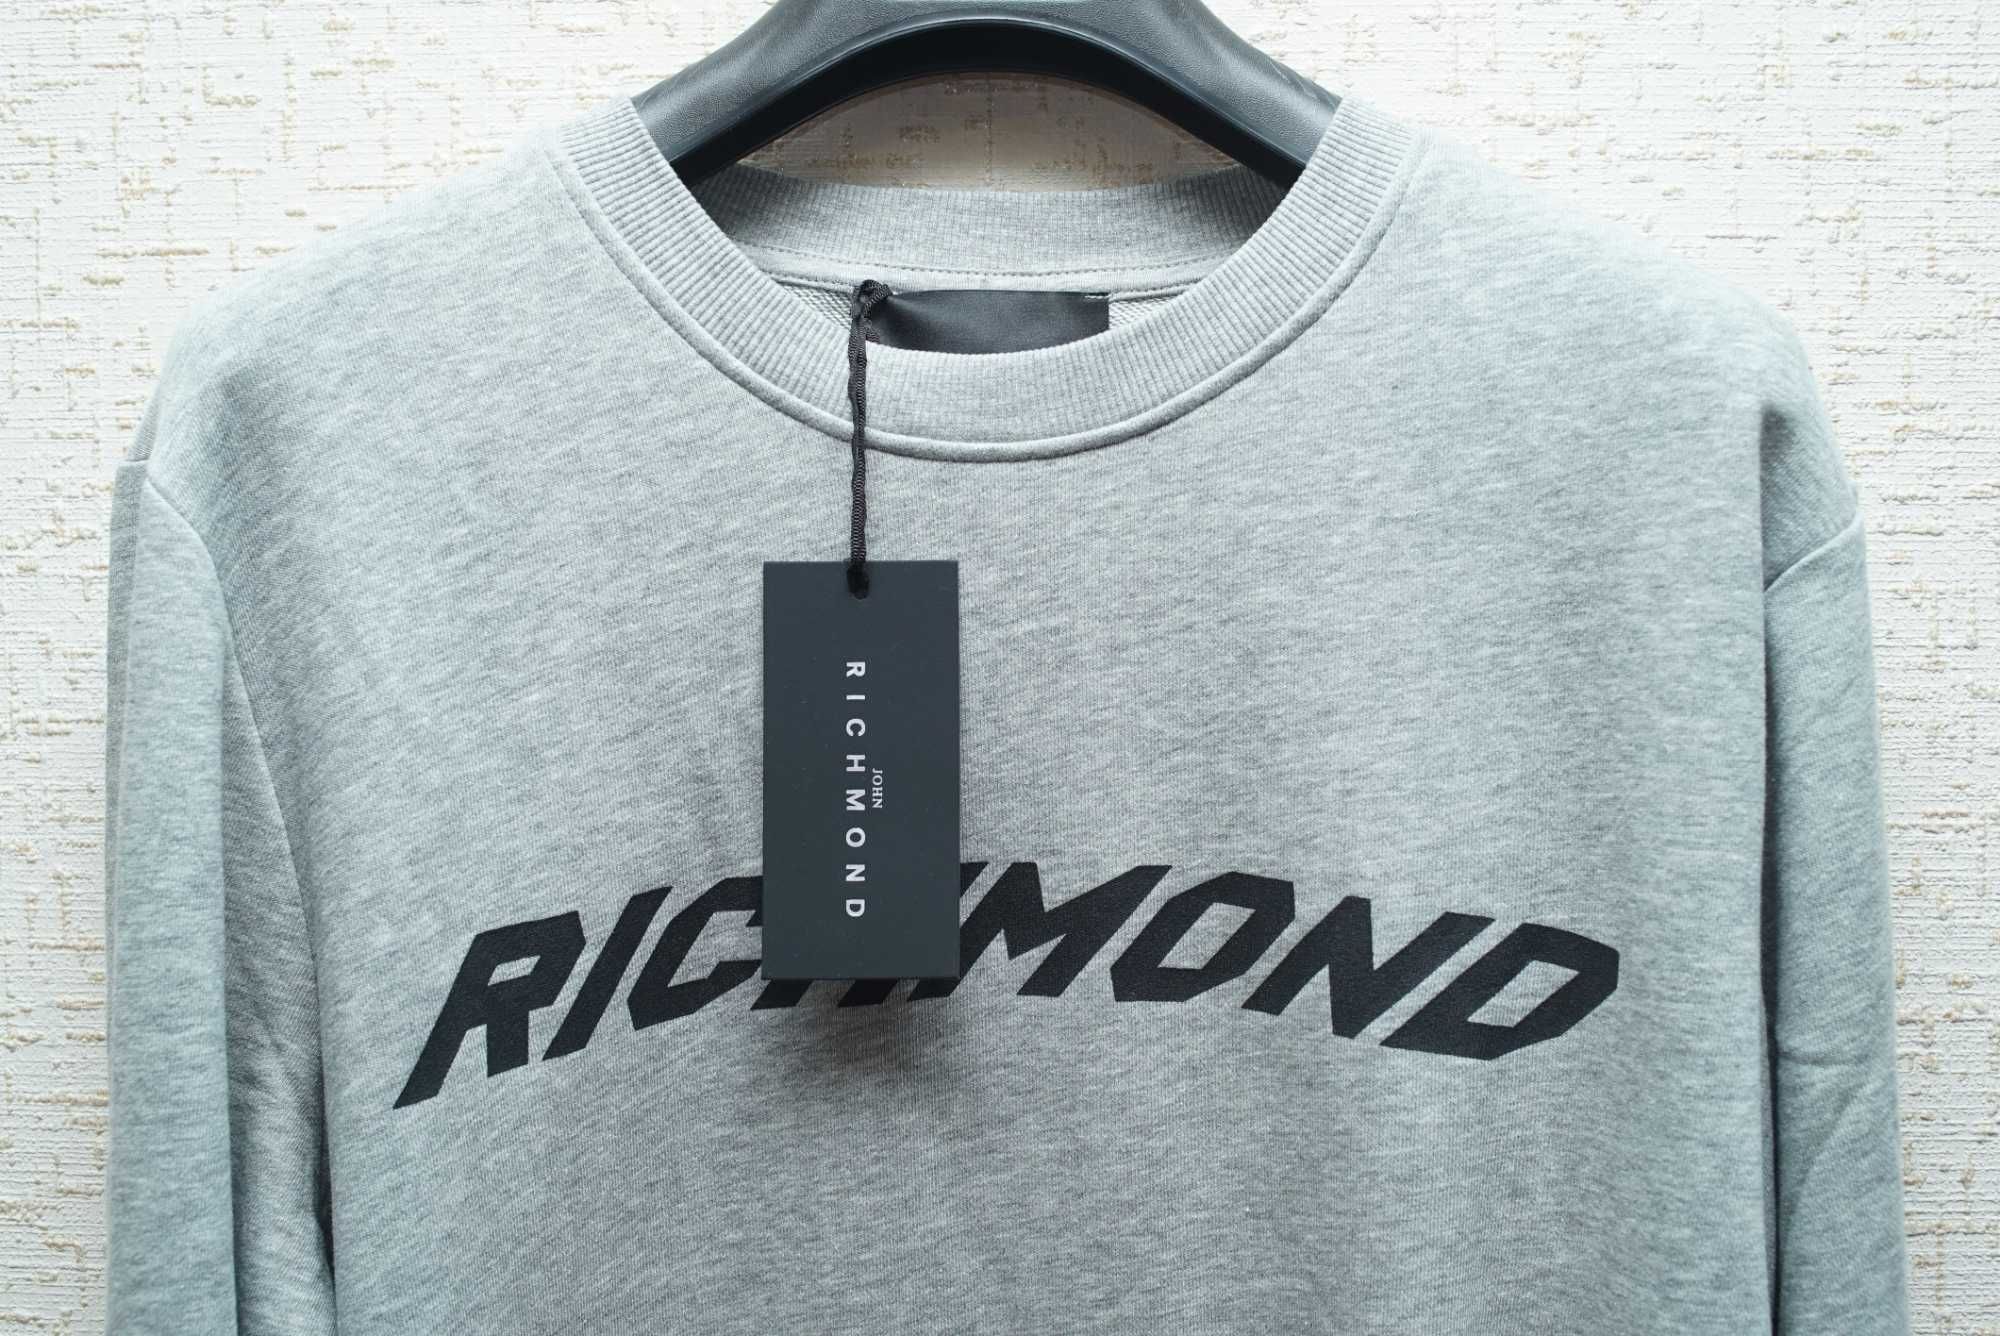 Мужской свитшот JOHN RICHMOND светло серого цвета с принтом.